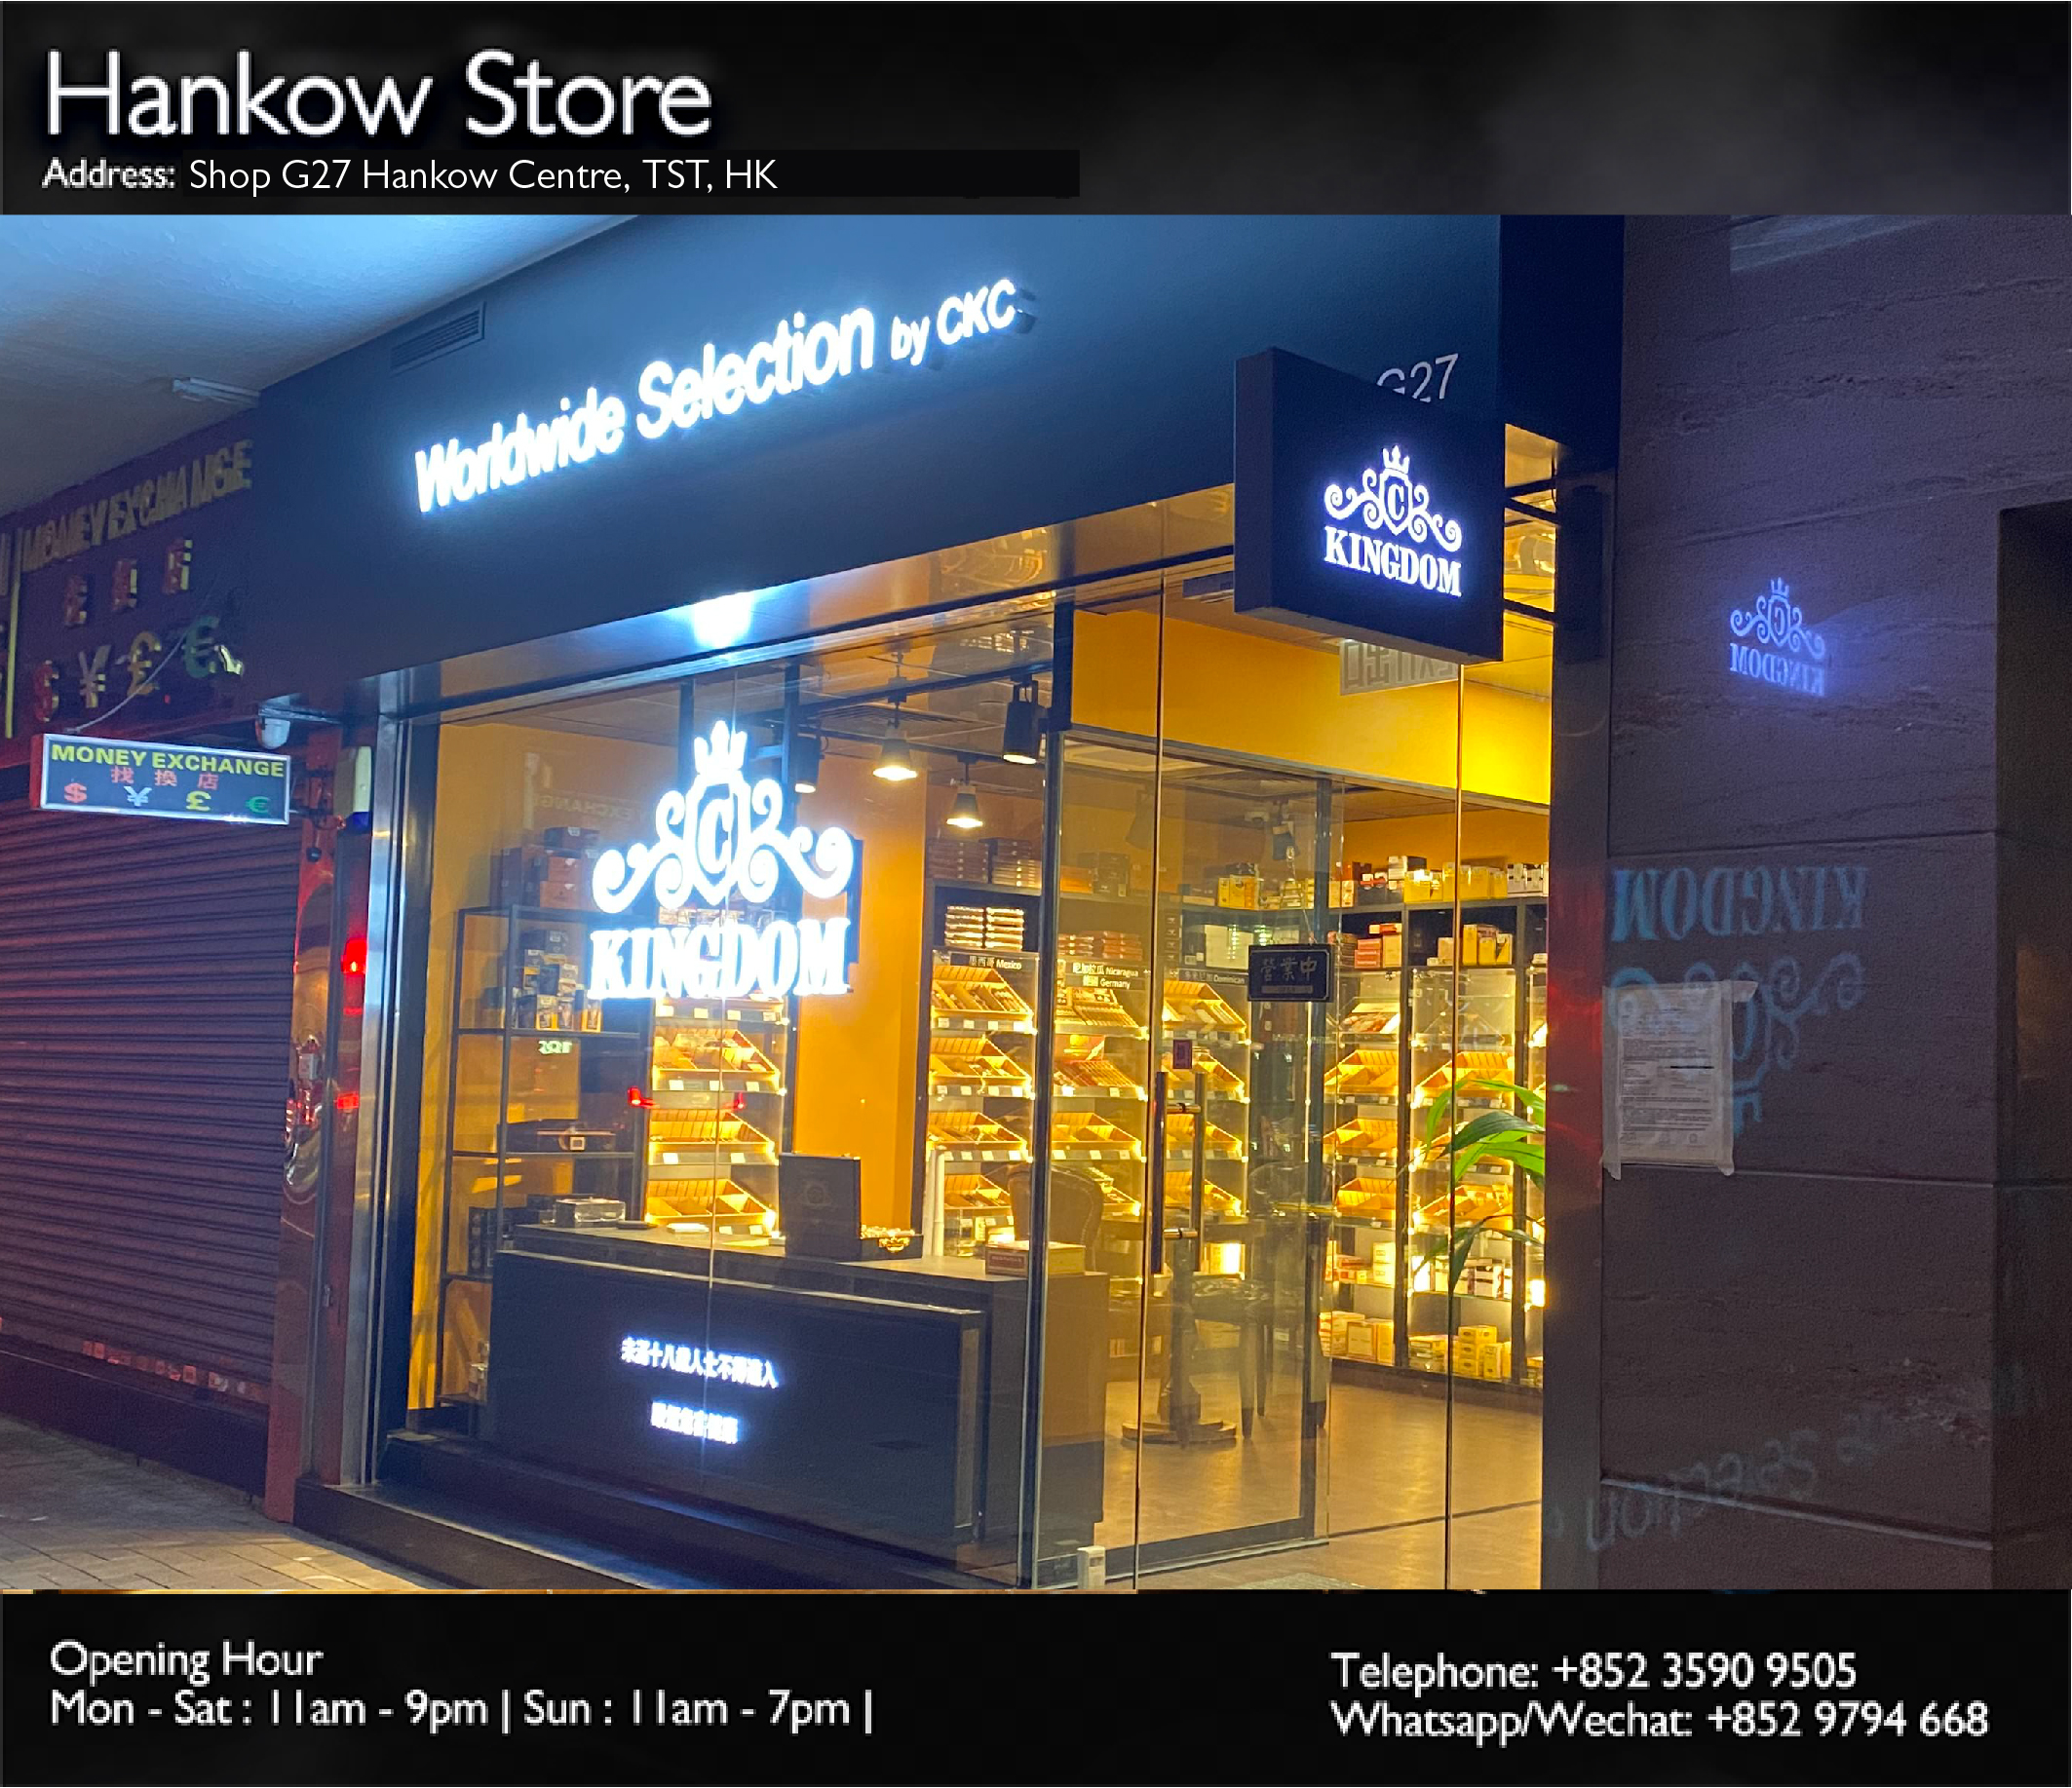 Hankow Store